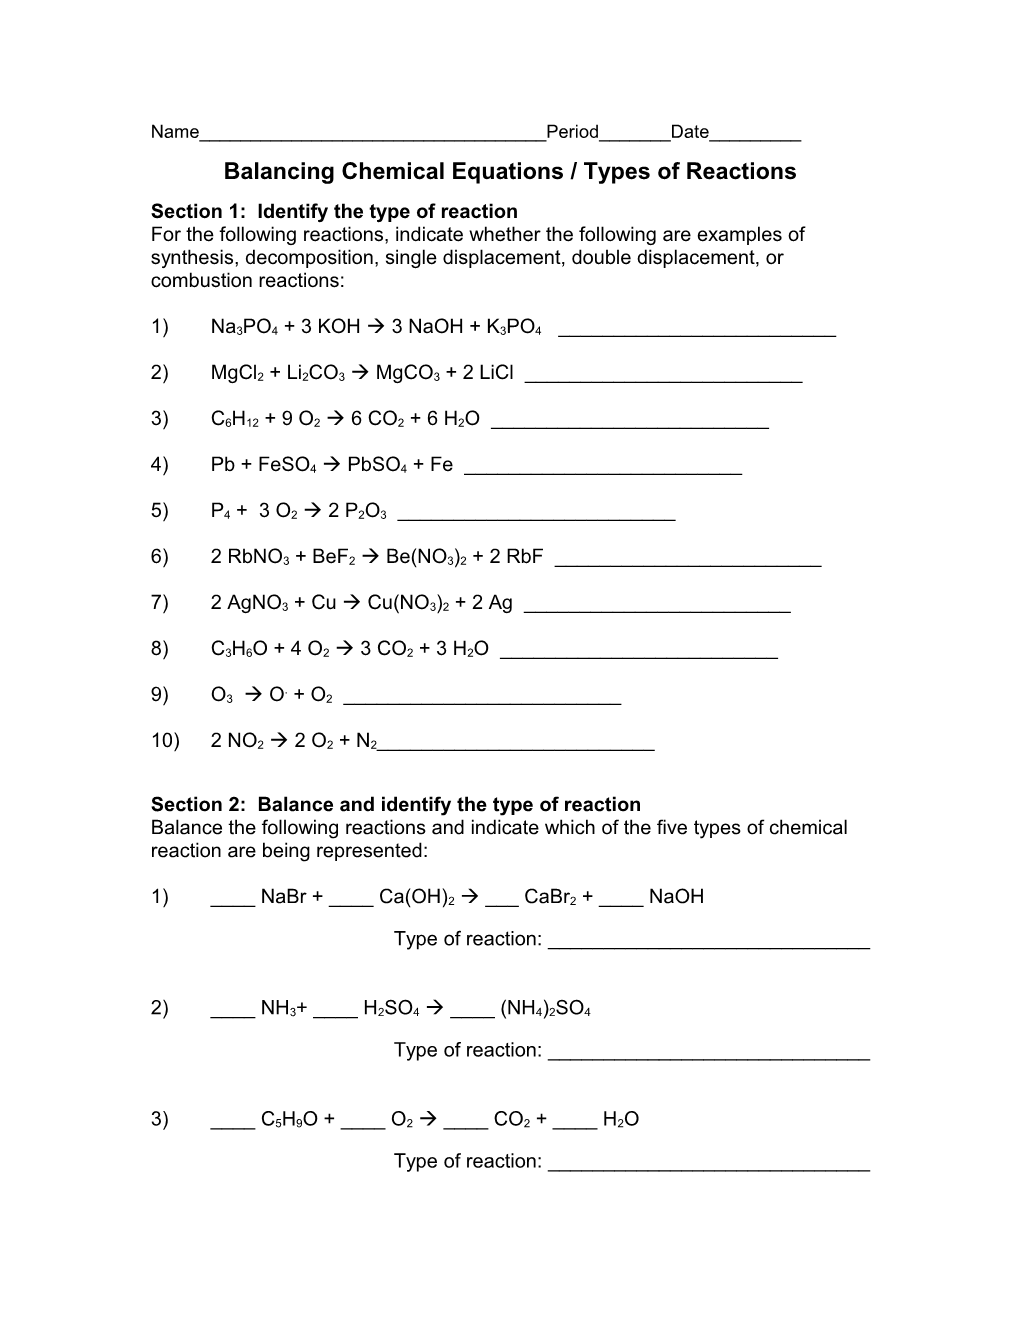 Balancing Chemical Equations Sheet s1